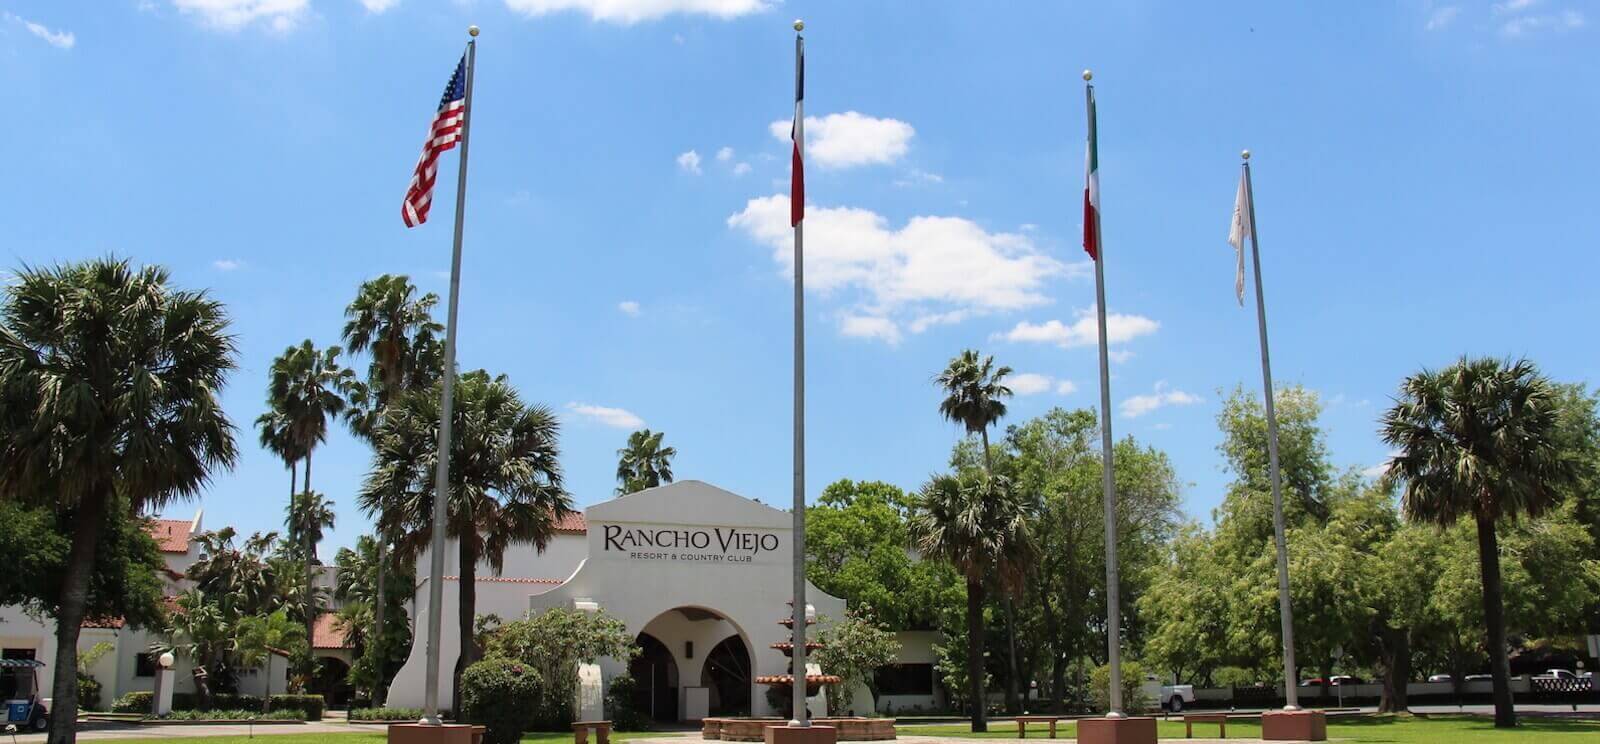 Rancho Viejo Resort & Country Club